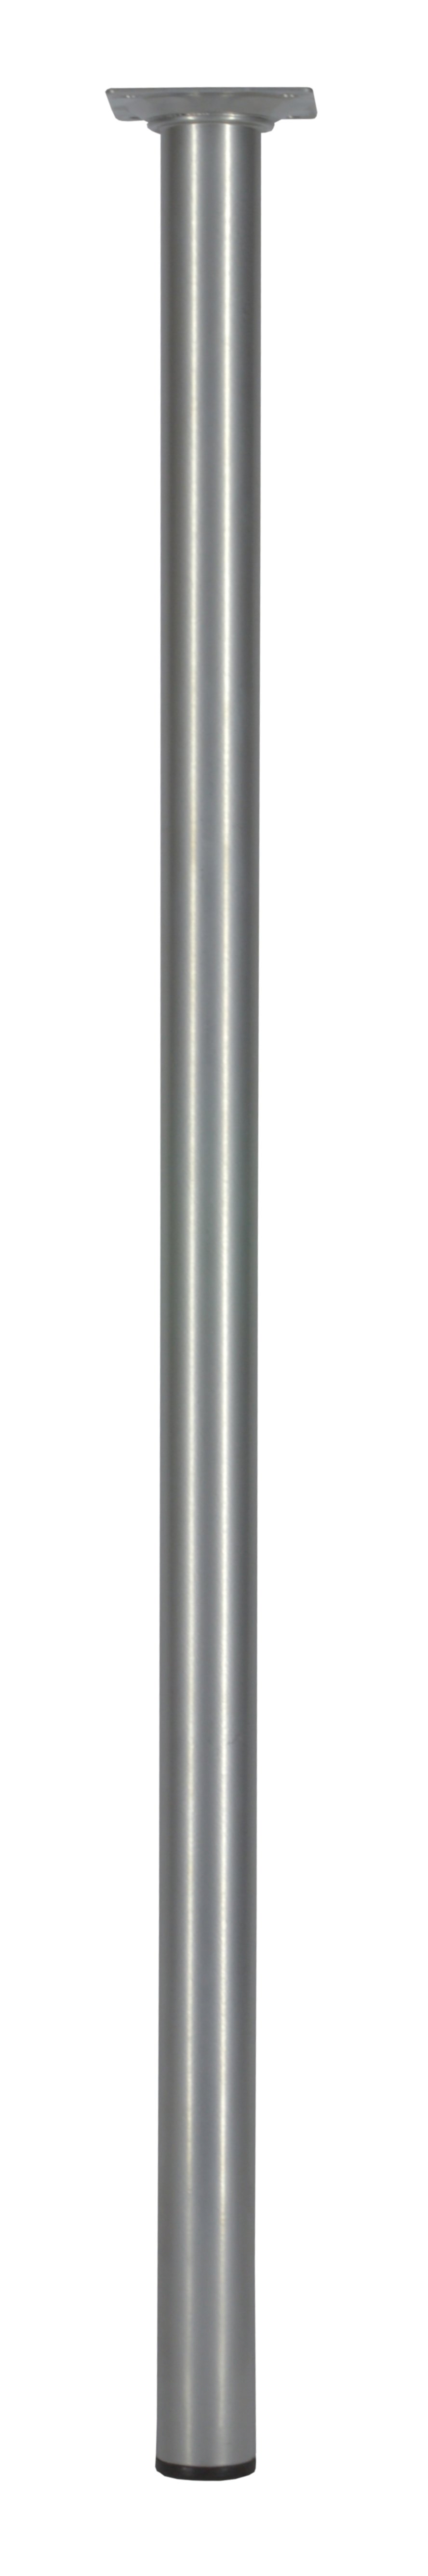 Pied rond. Platine 60 x 60 mm Ø30 mm Acier gris aluminium H700 mm - CIME